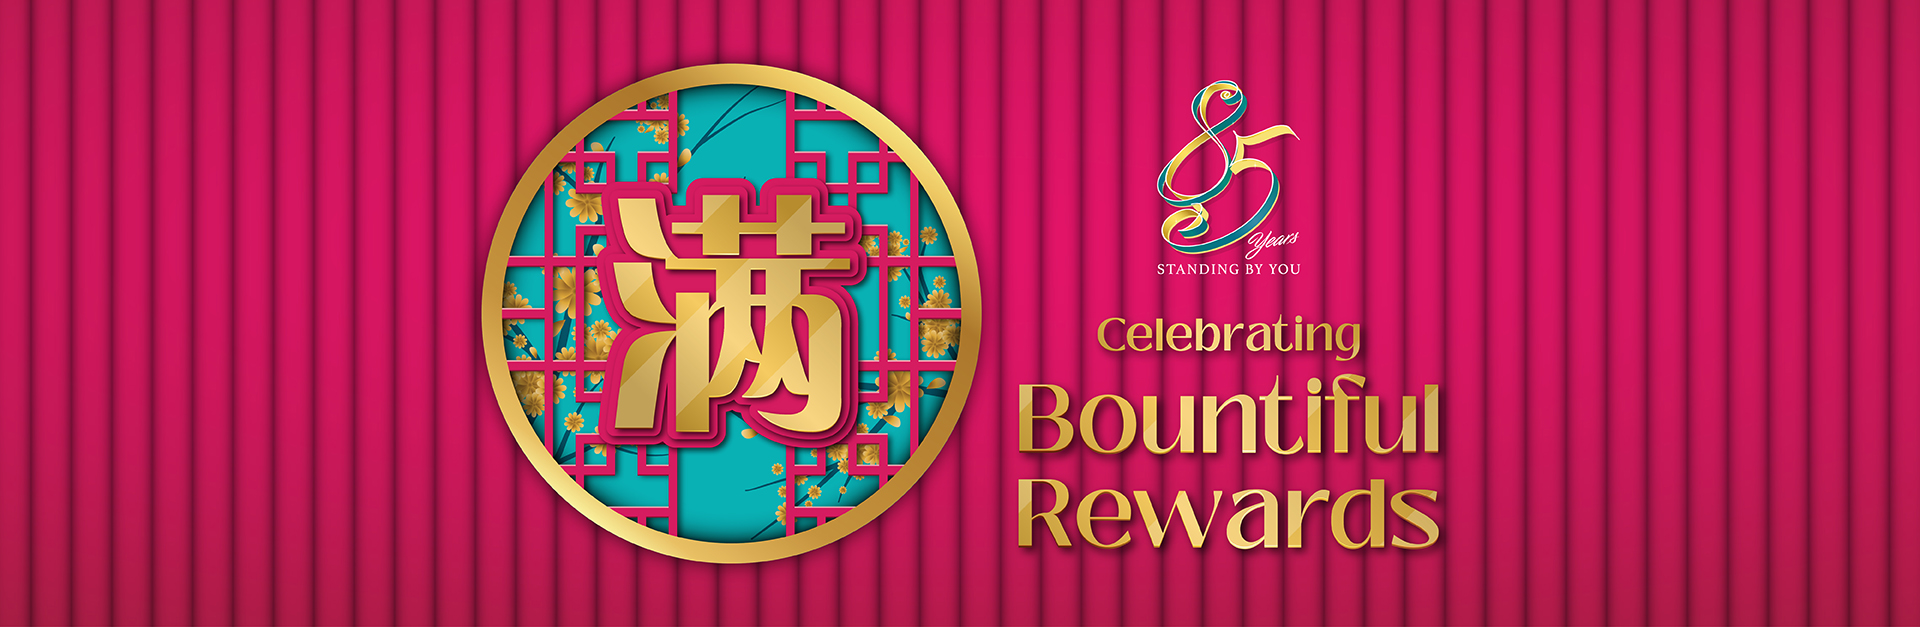 Celebrating Bountiful Rewards banner cn